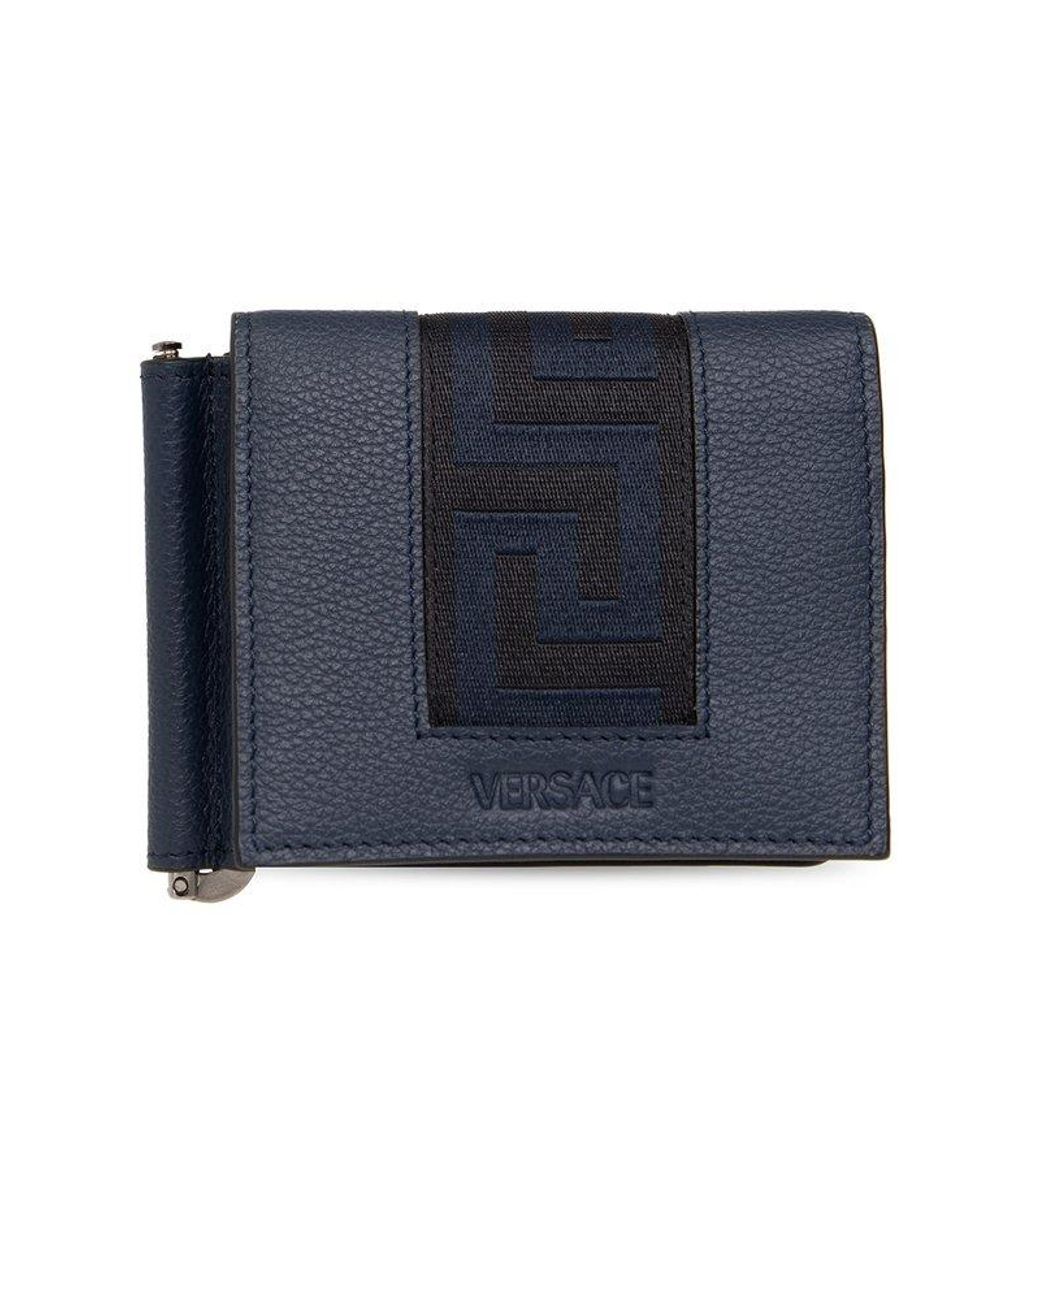 Amazon.in: Versace Wallet For Men